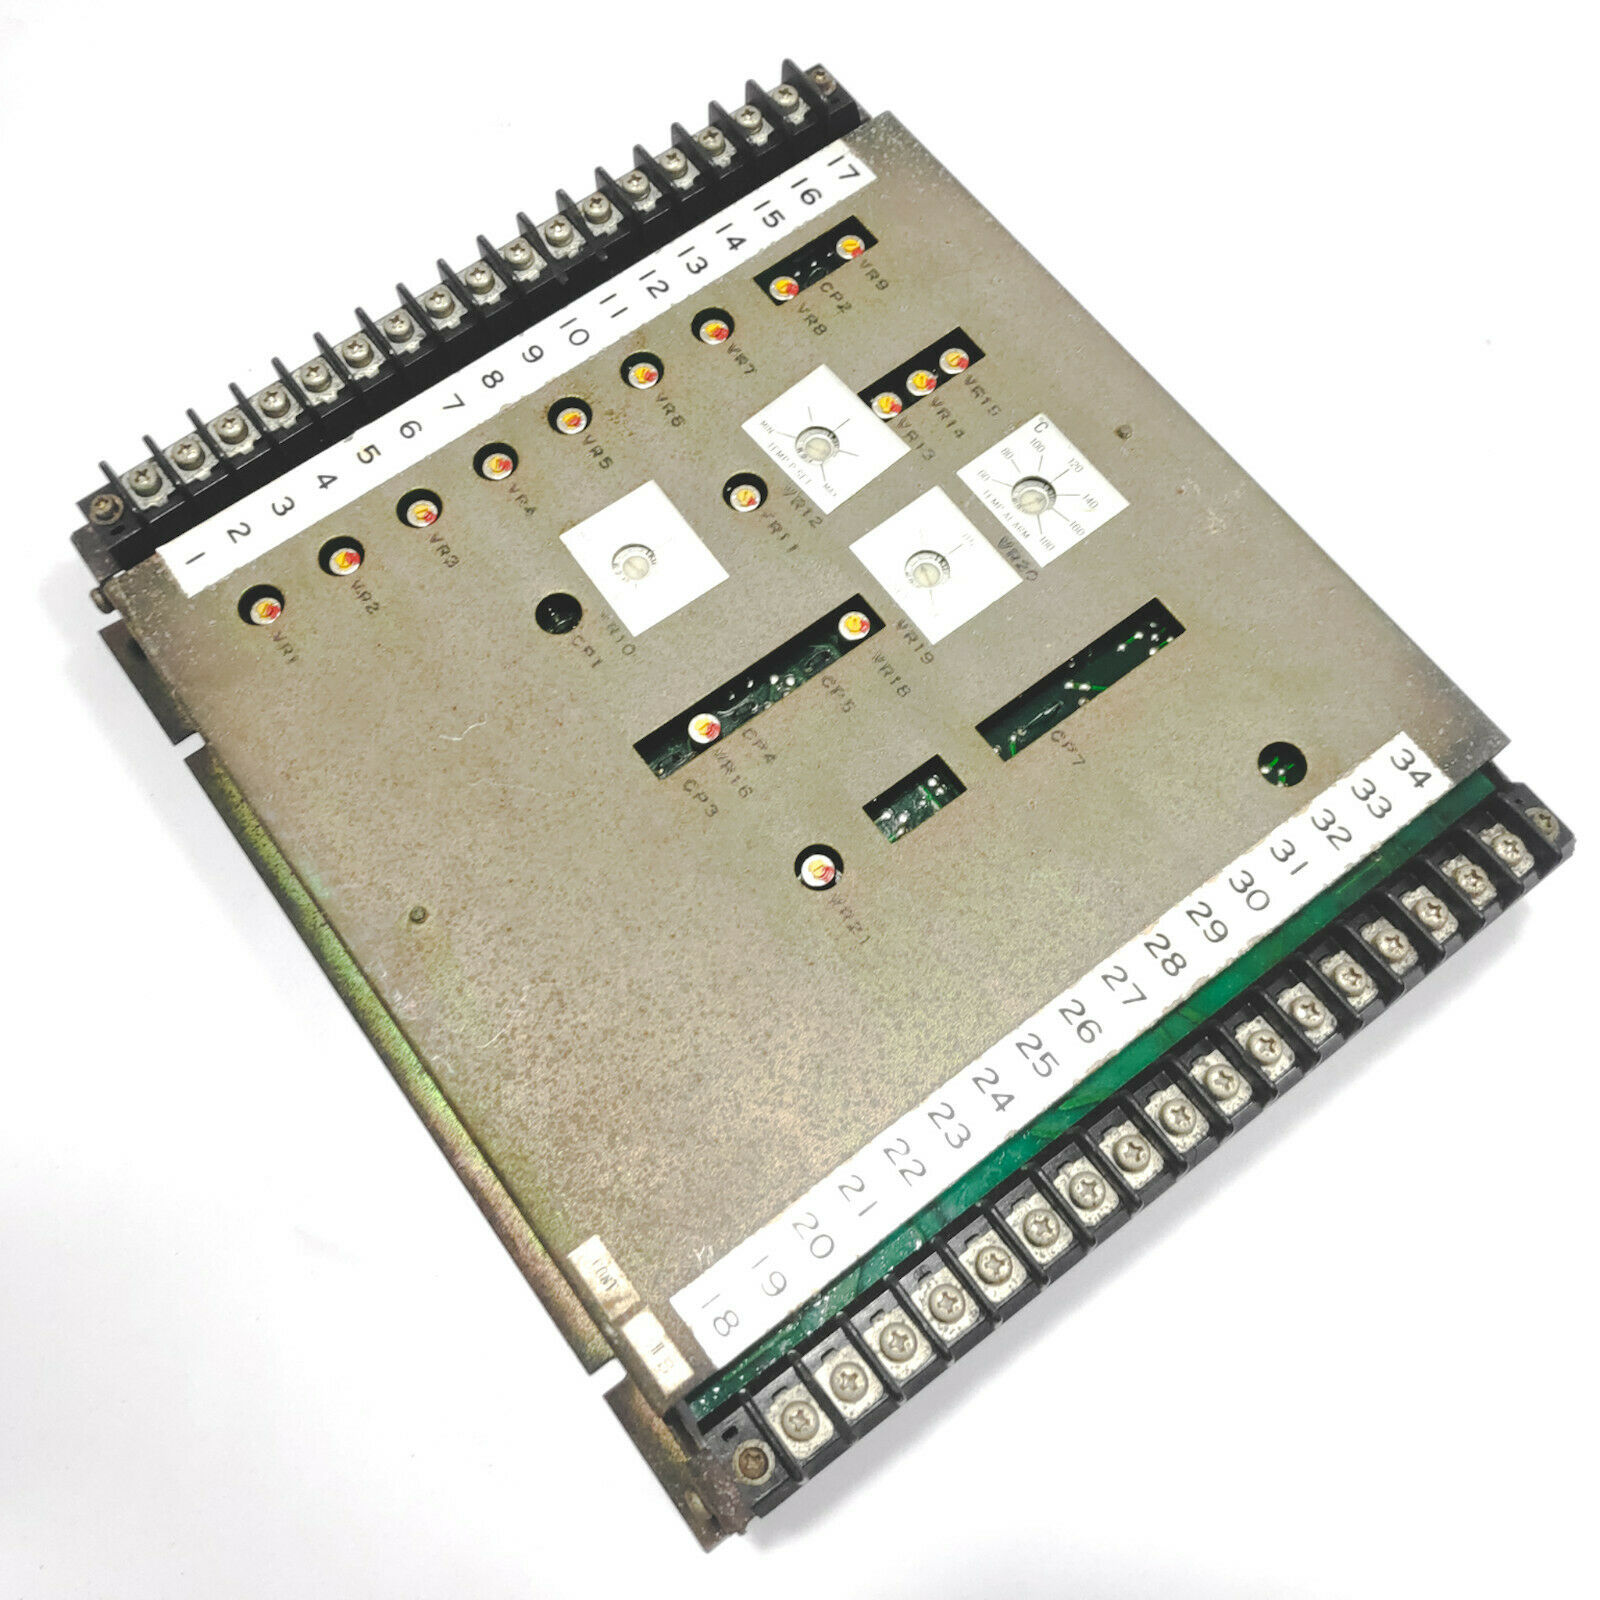 Saginomiya E-UJ-44030-B Automation Control PCB Circuit Panel Board